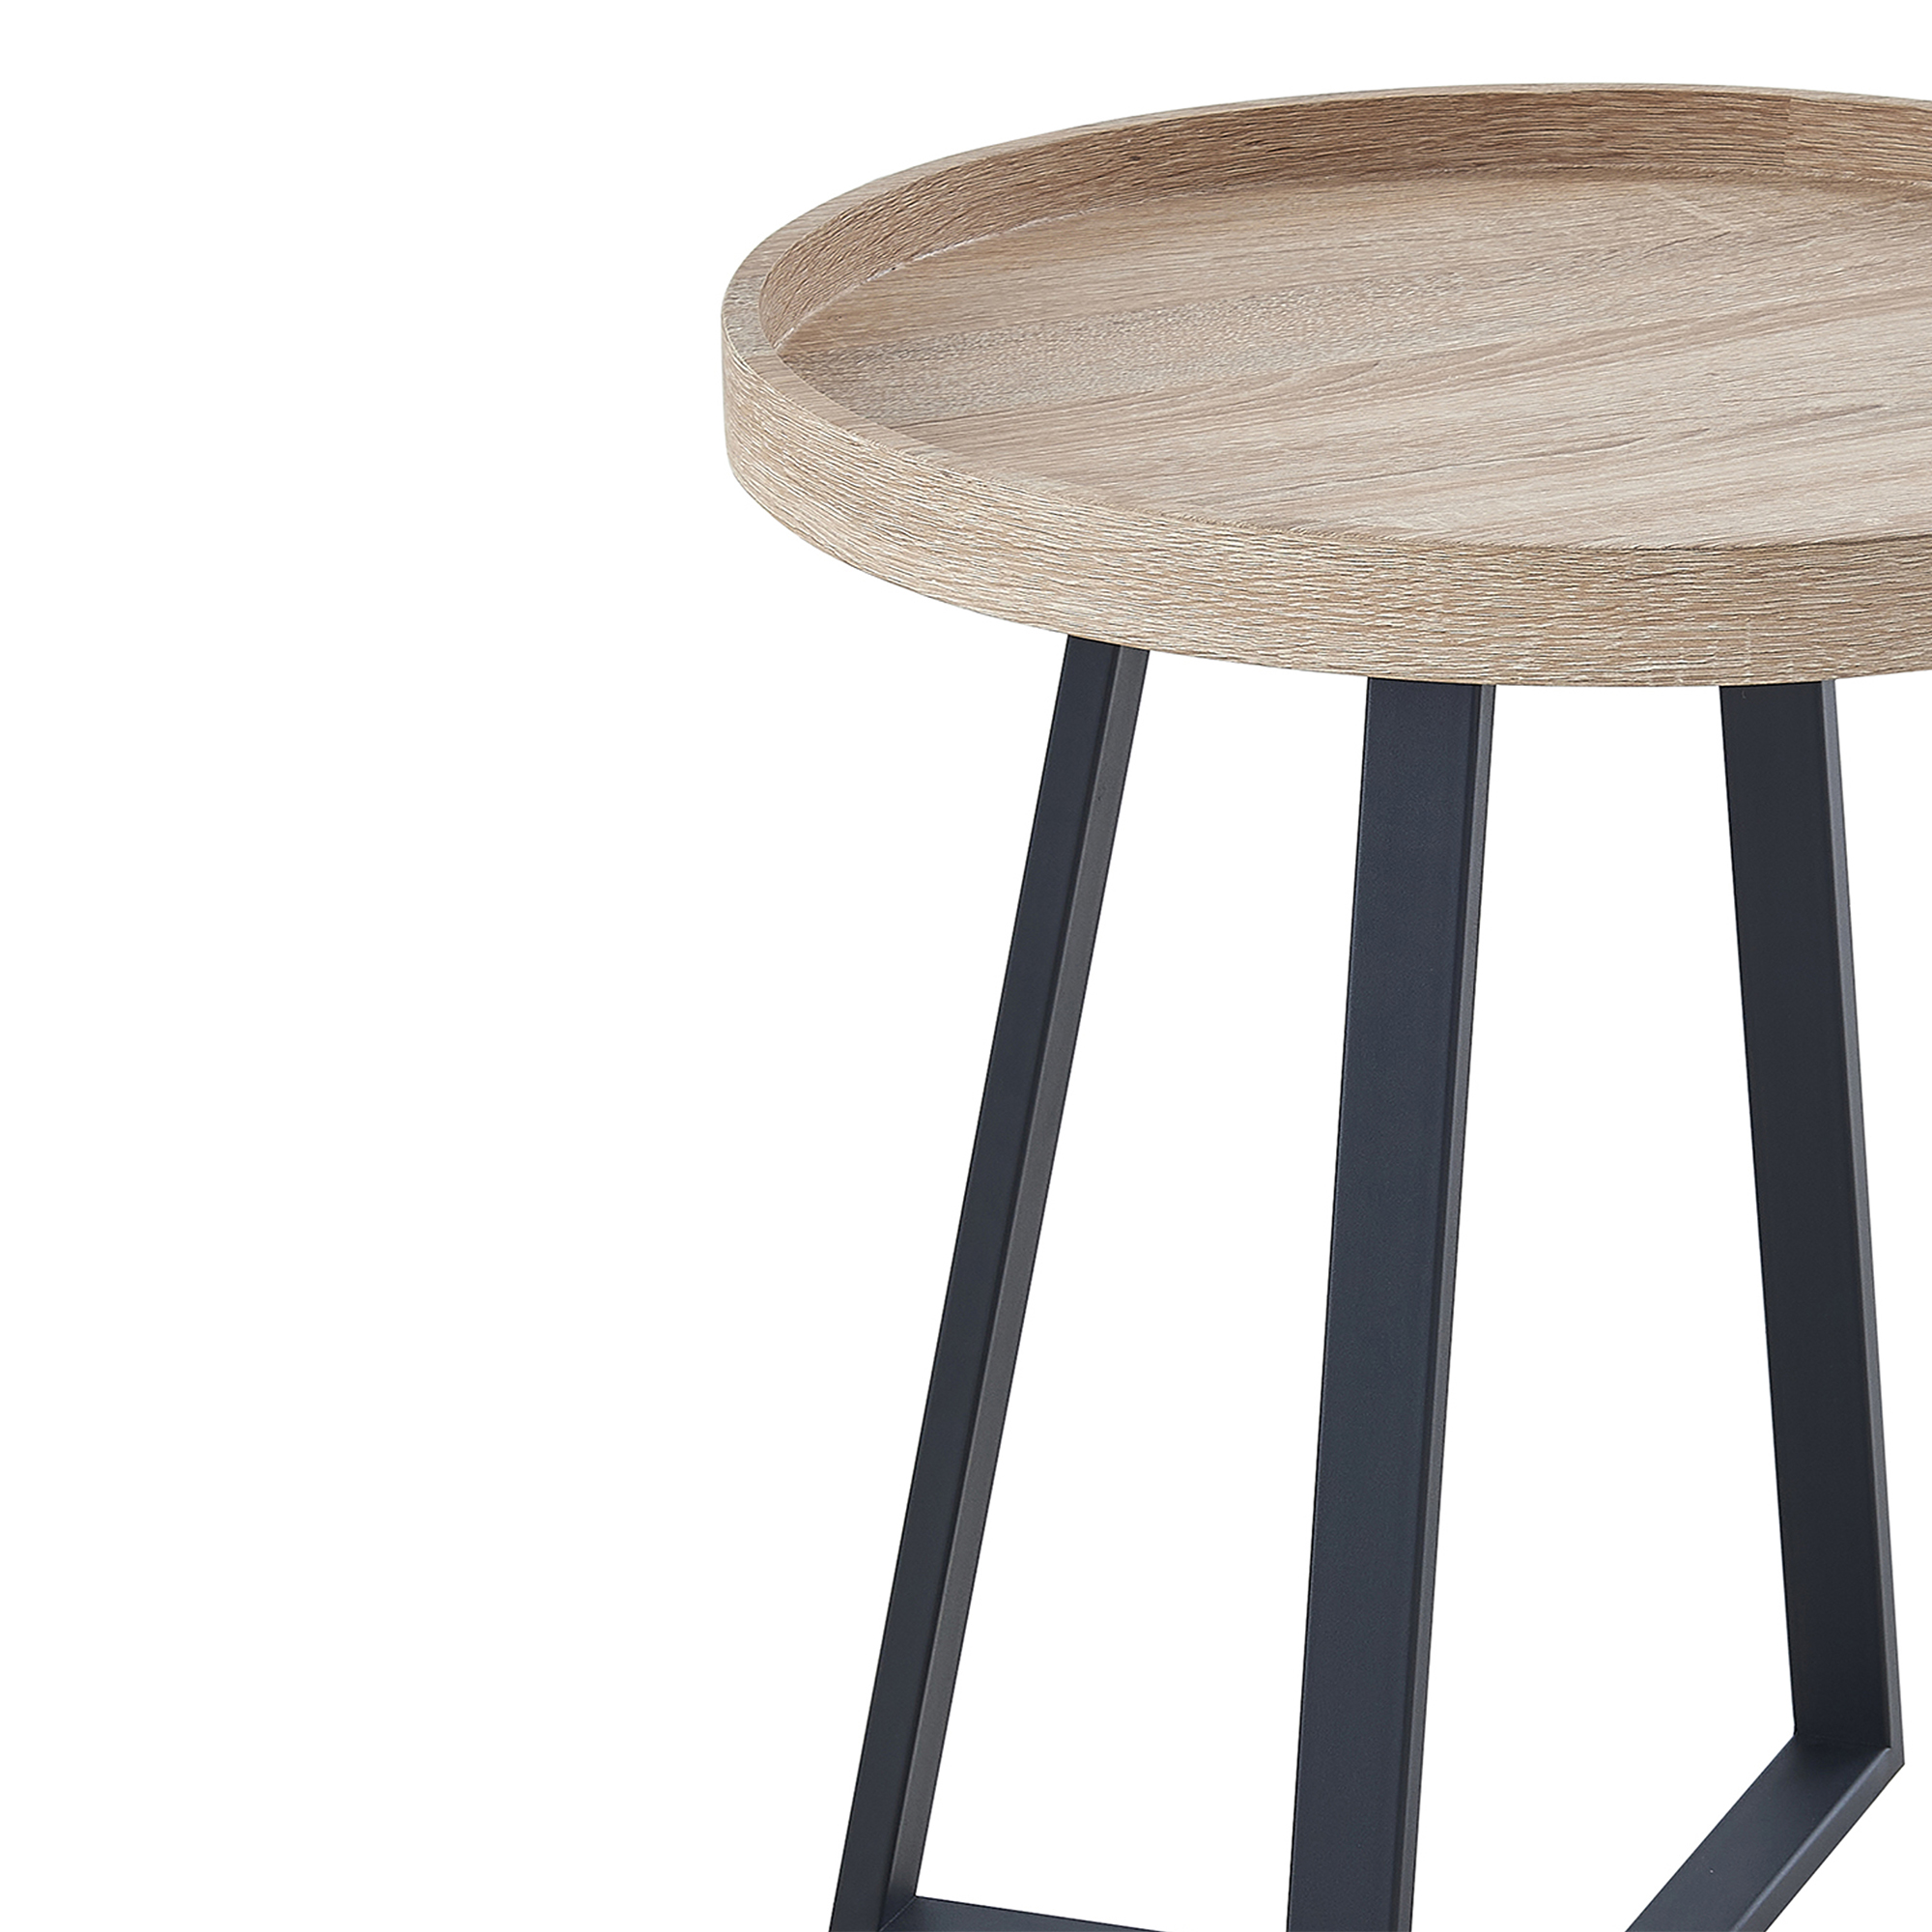 Table d'appoint ronde en bois clair piètement en métal noir